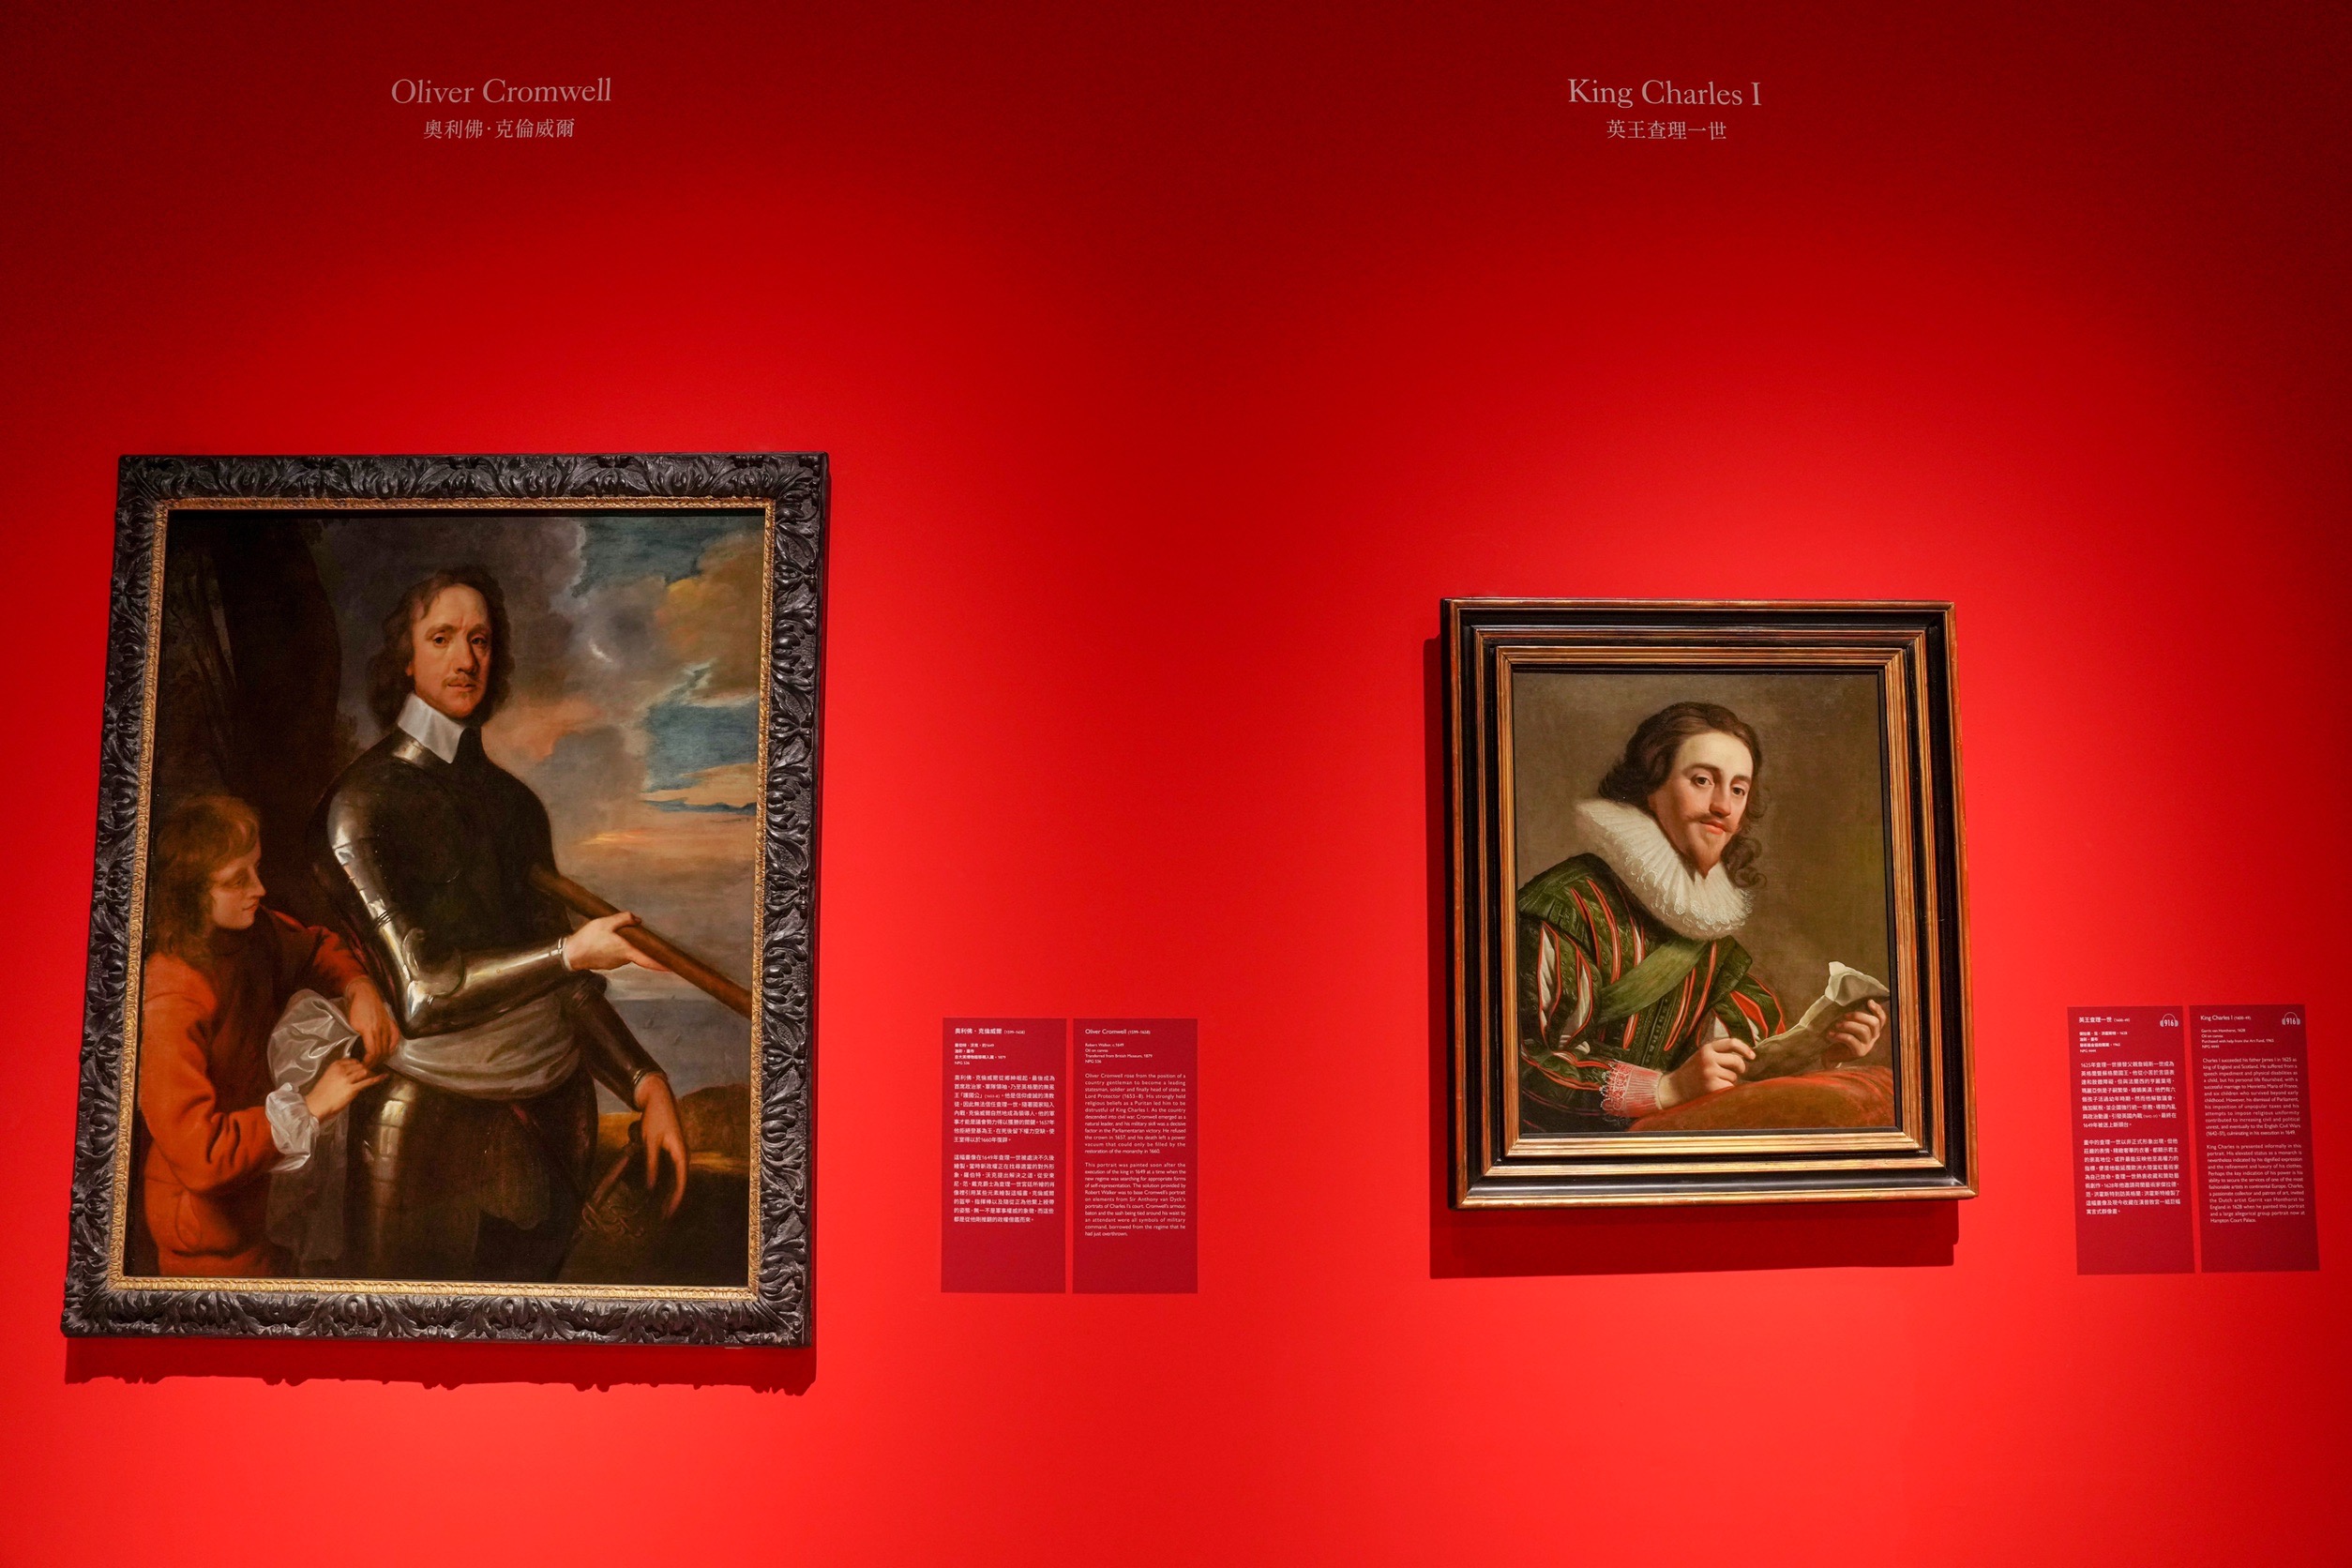 奇美博物館 時代的臉孔:從莎士比亞到紅髮艾德